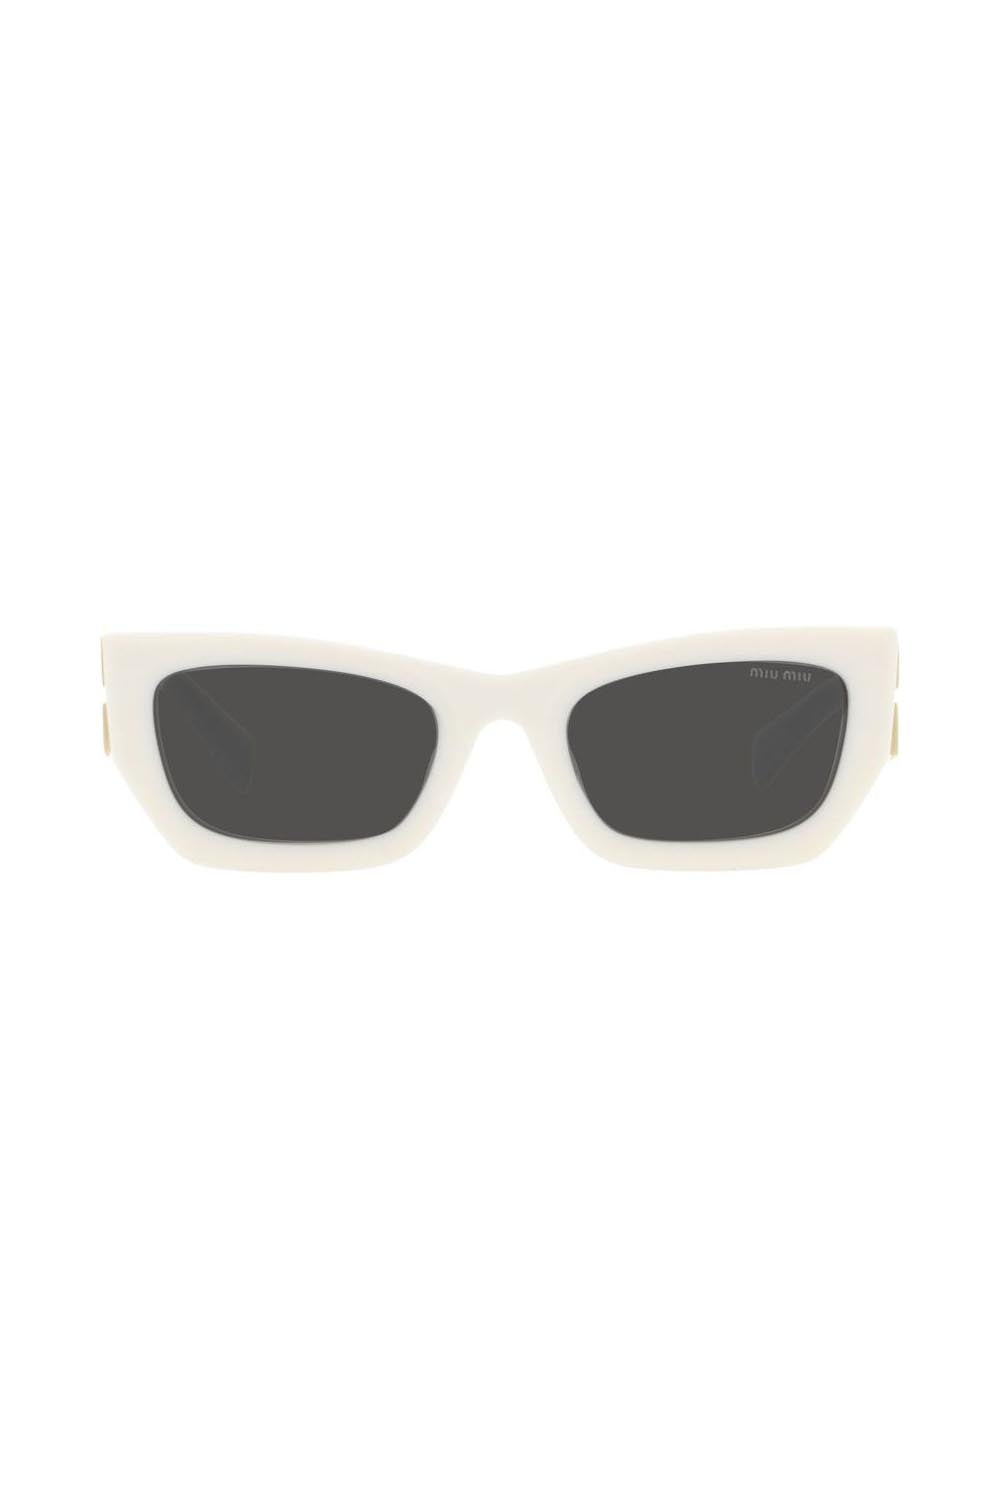 Miu Miu Sunglasses MU 09WS White